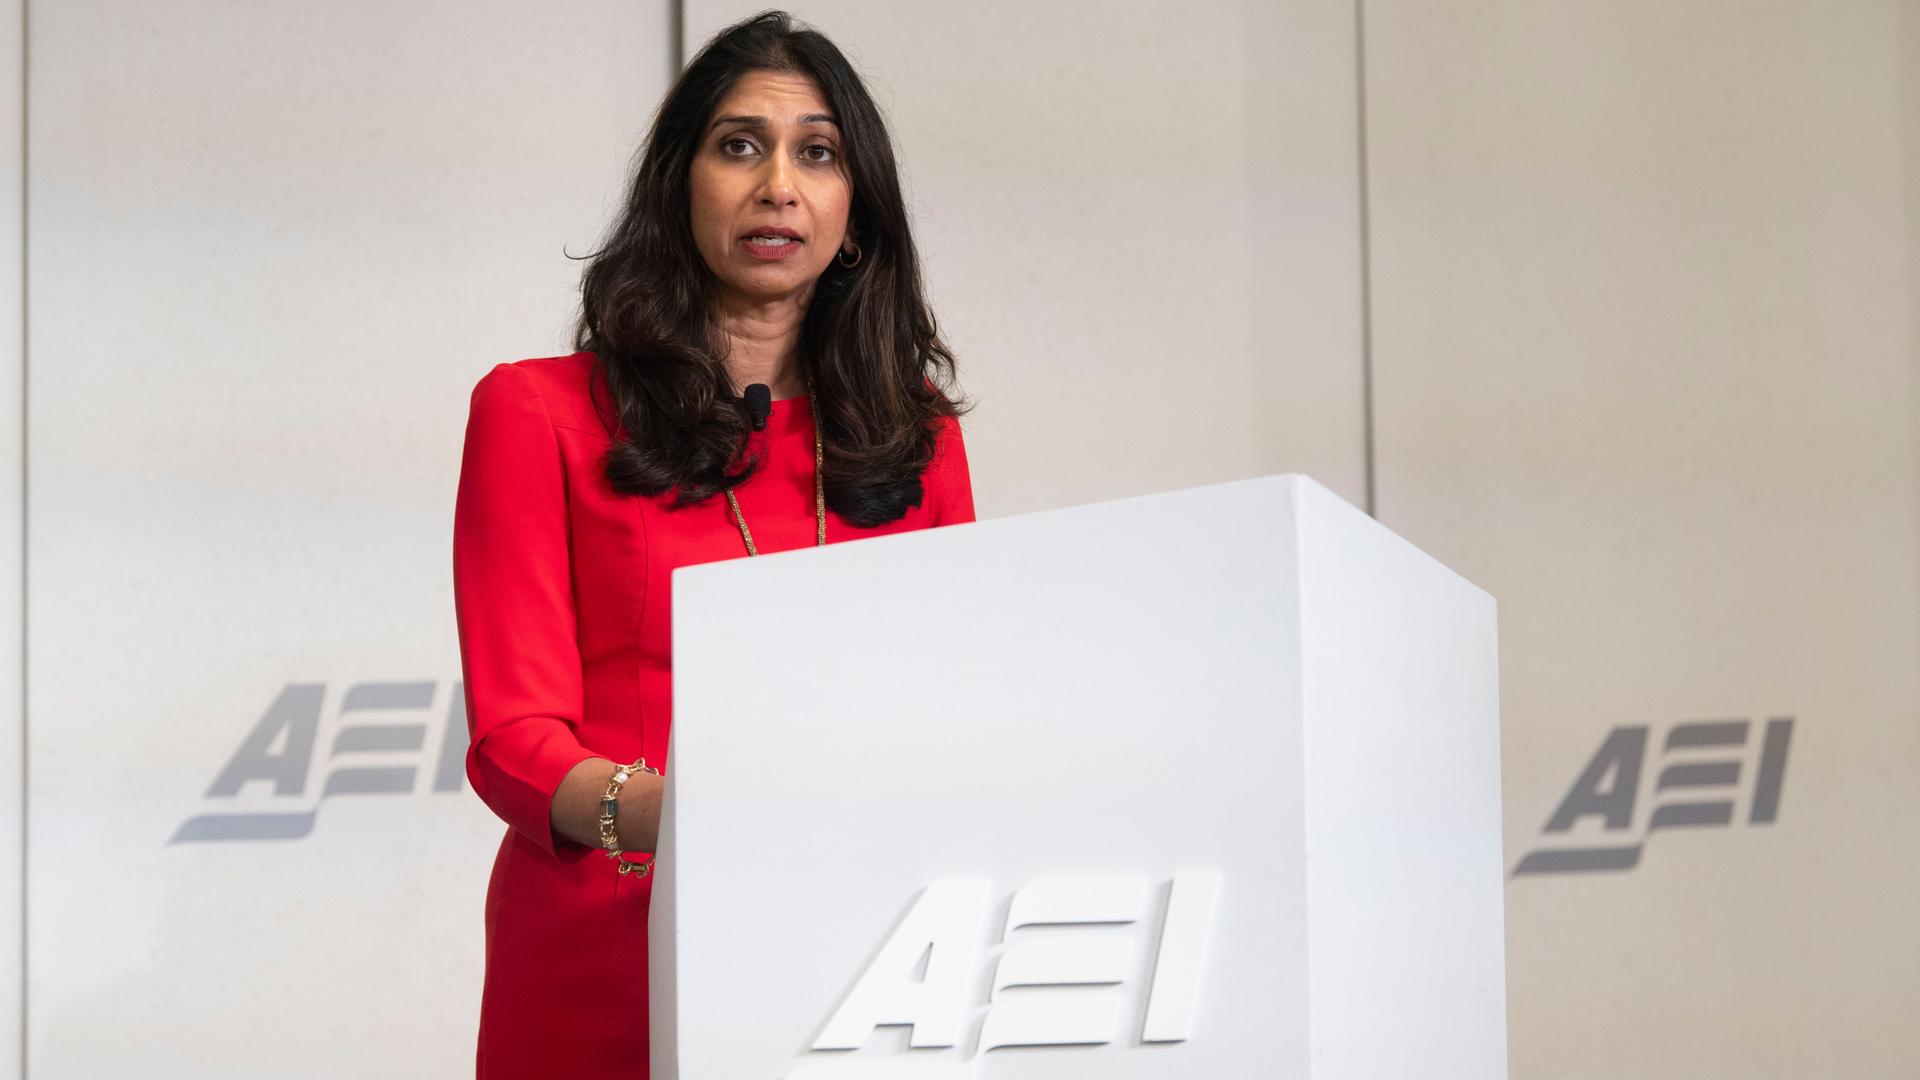 Die britische Innenministerin Suella Braverman steht bei einer Veranstaltung des politischen Instituts AEI hinter einem Rednerpult